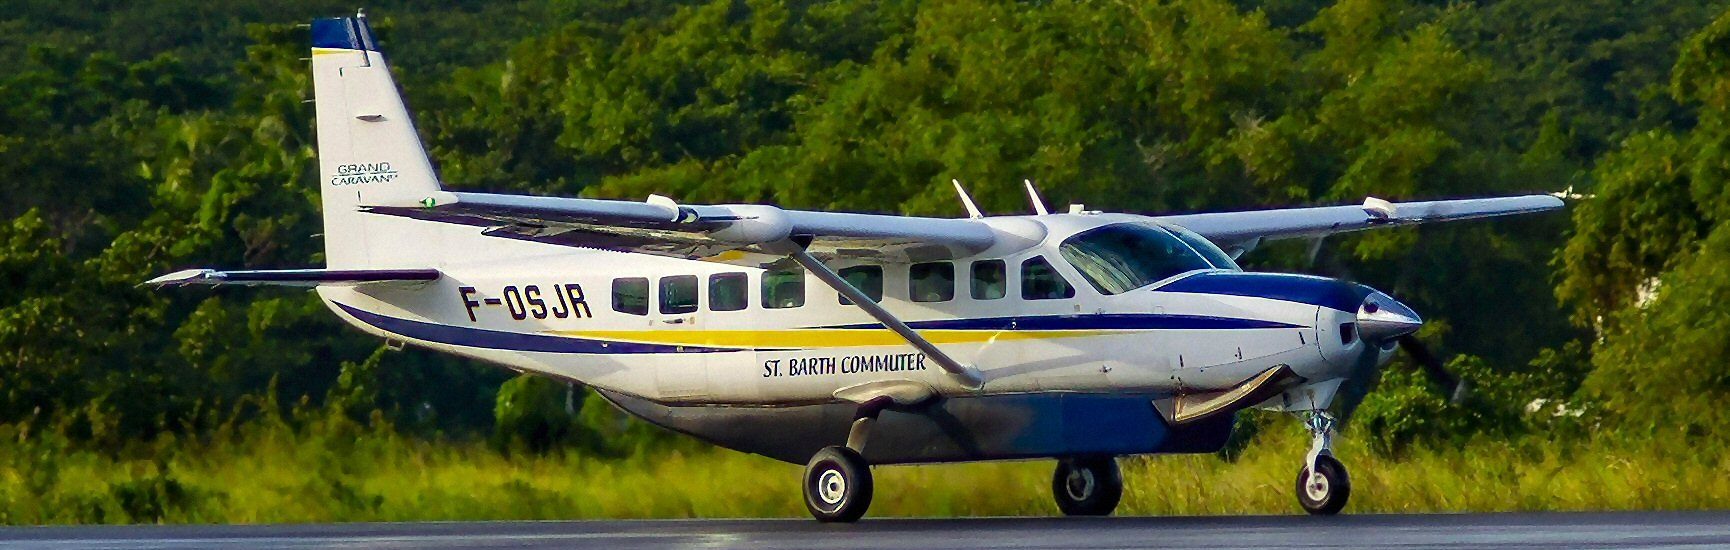 Cessna 208B St. Barth Commuter F-OSJR